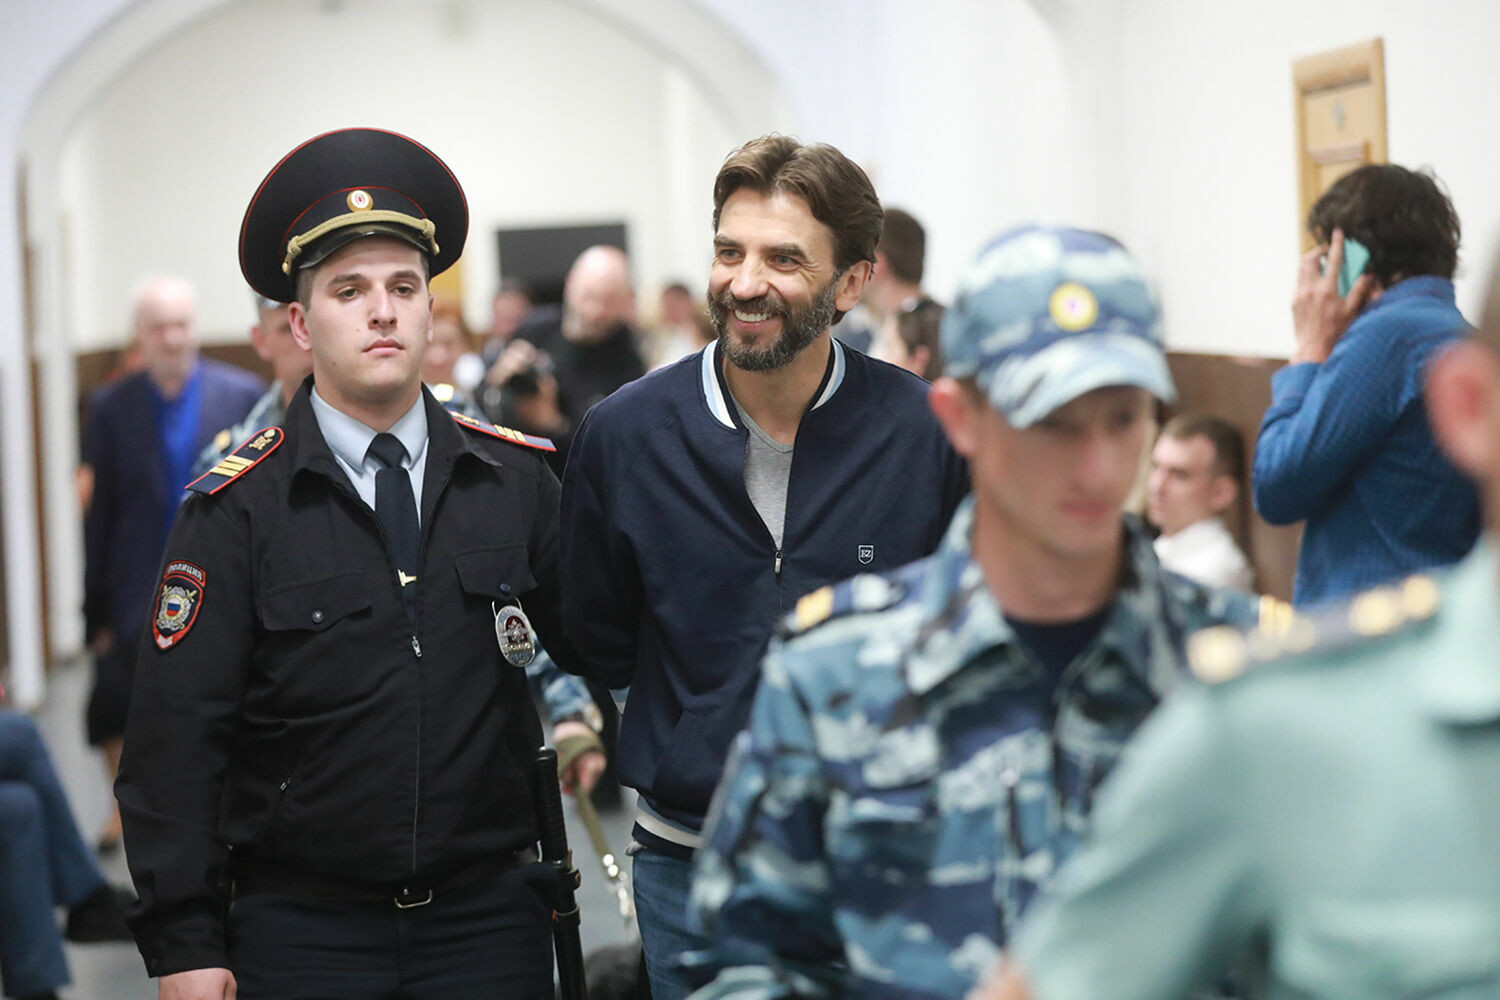 Мосгорсуд снял арест с облигаций Михаила Абызова на 5,5 млрд рублей